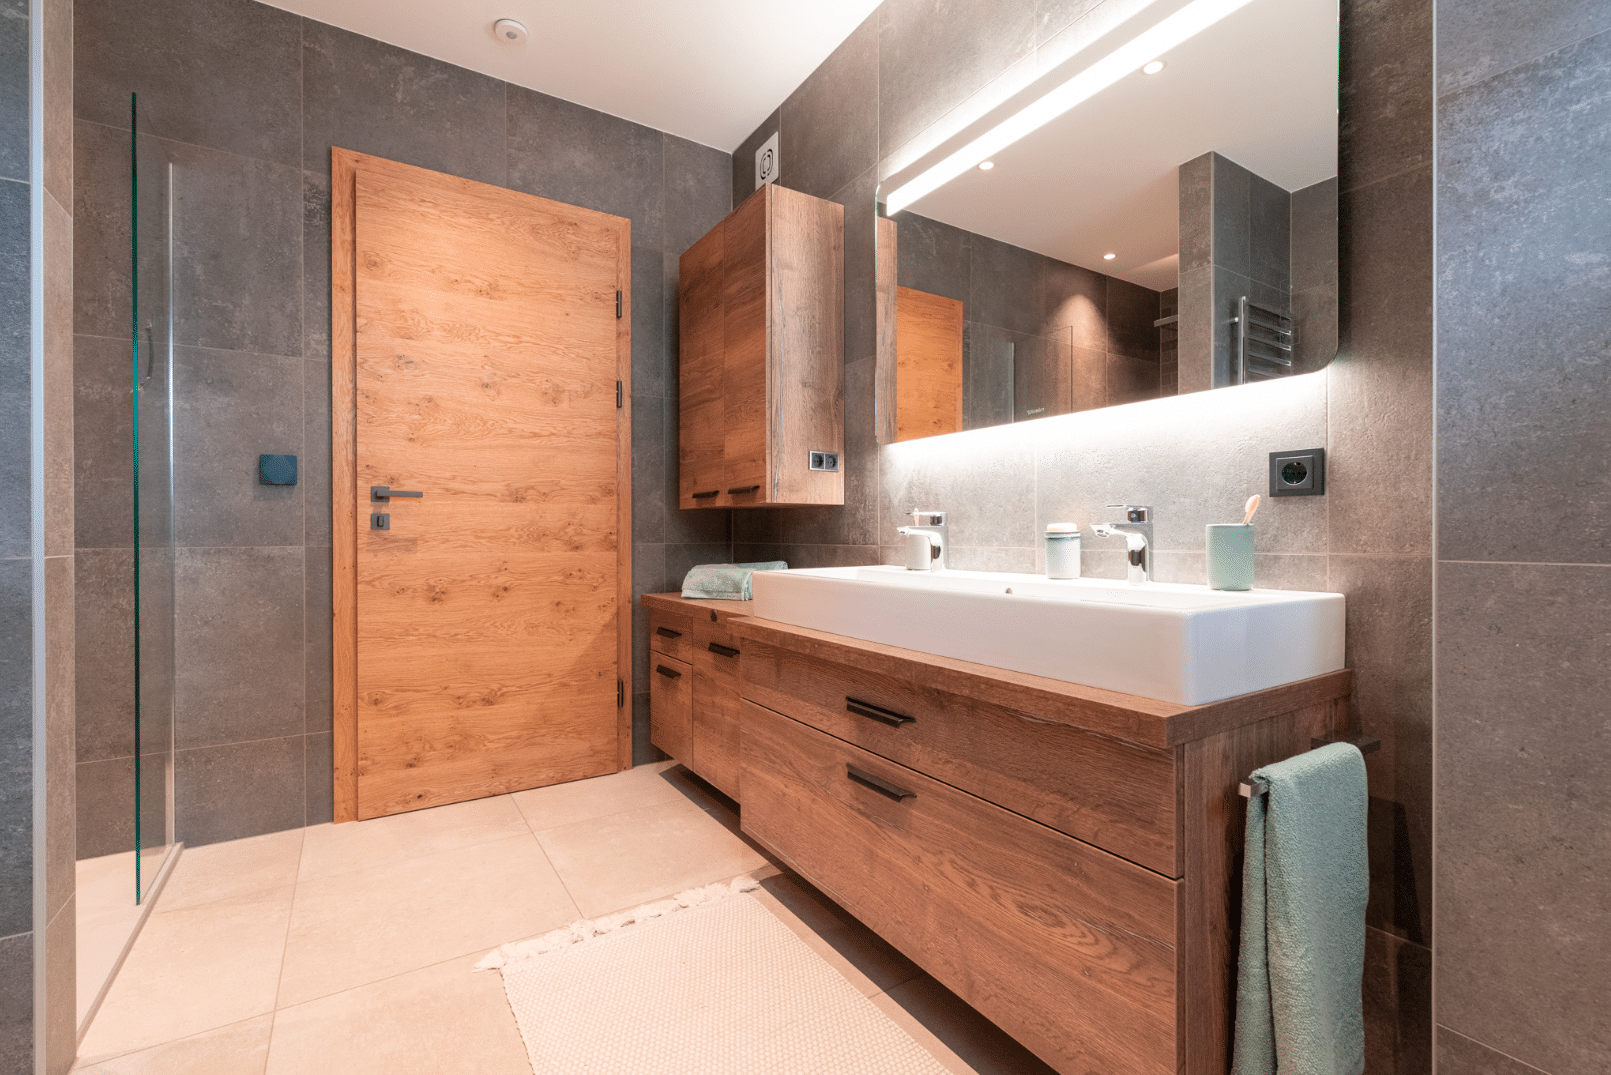 Hartl Haus zeigt ein Badezimmer mit aufeinander abgestimmter Holztür und Kästen.